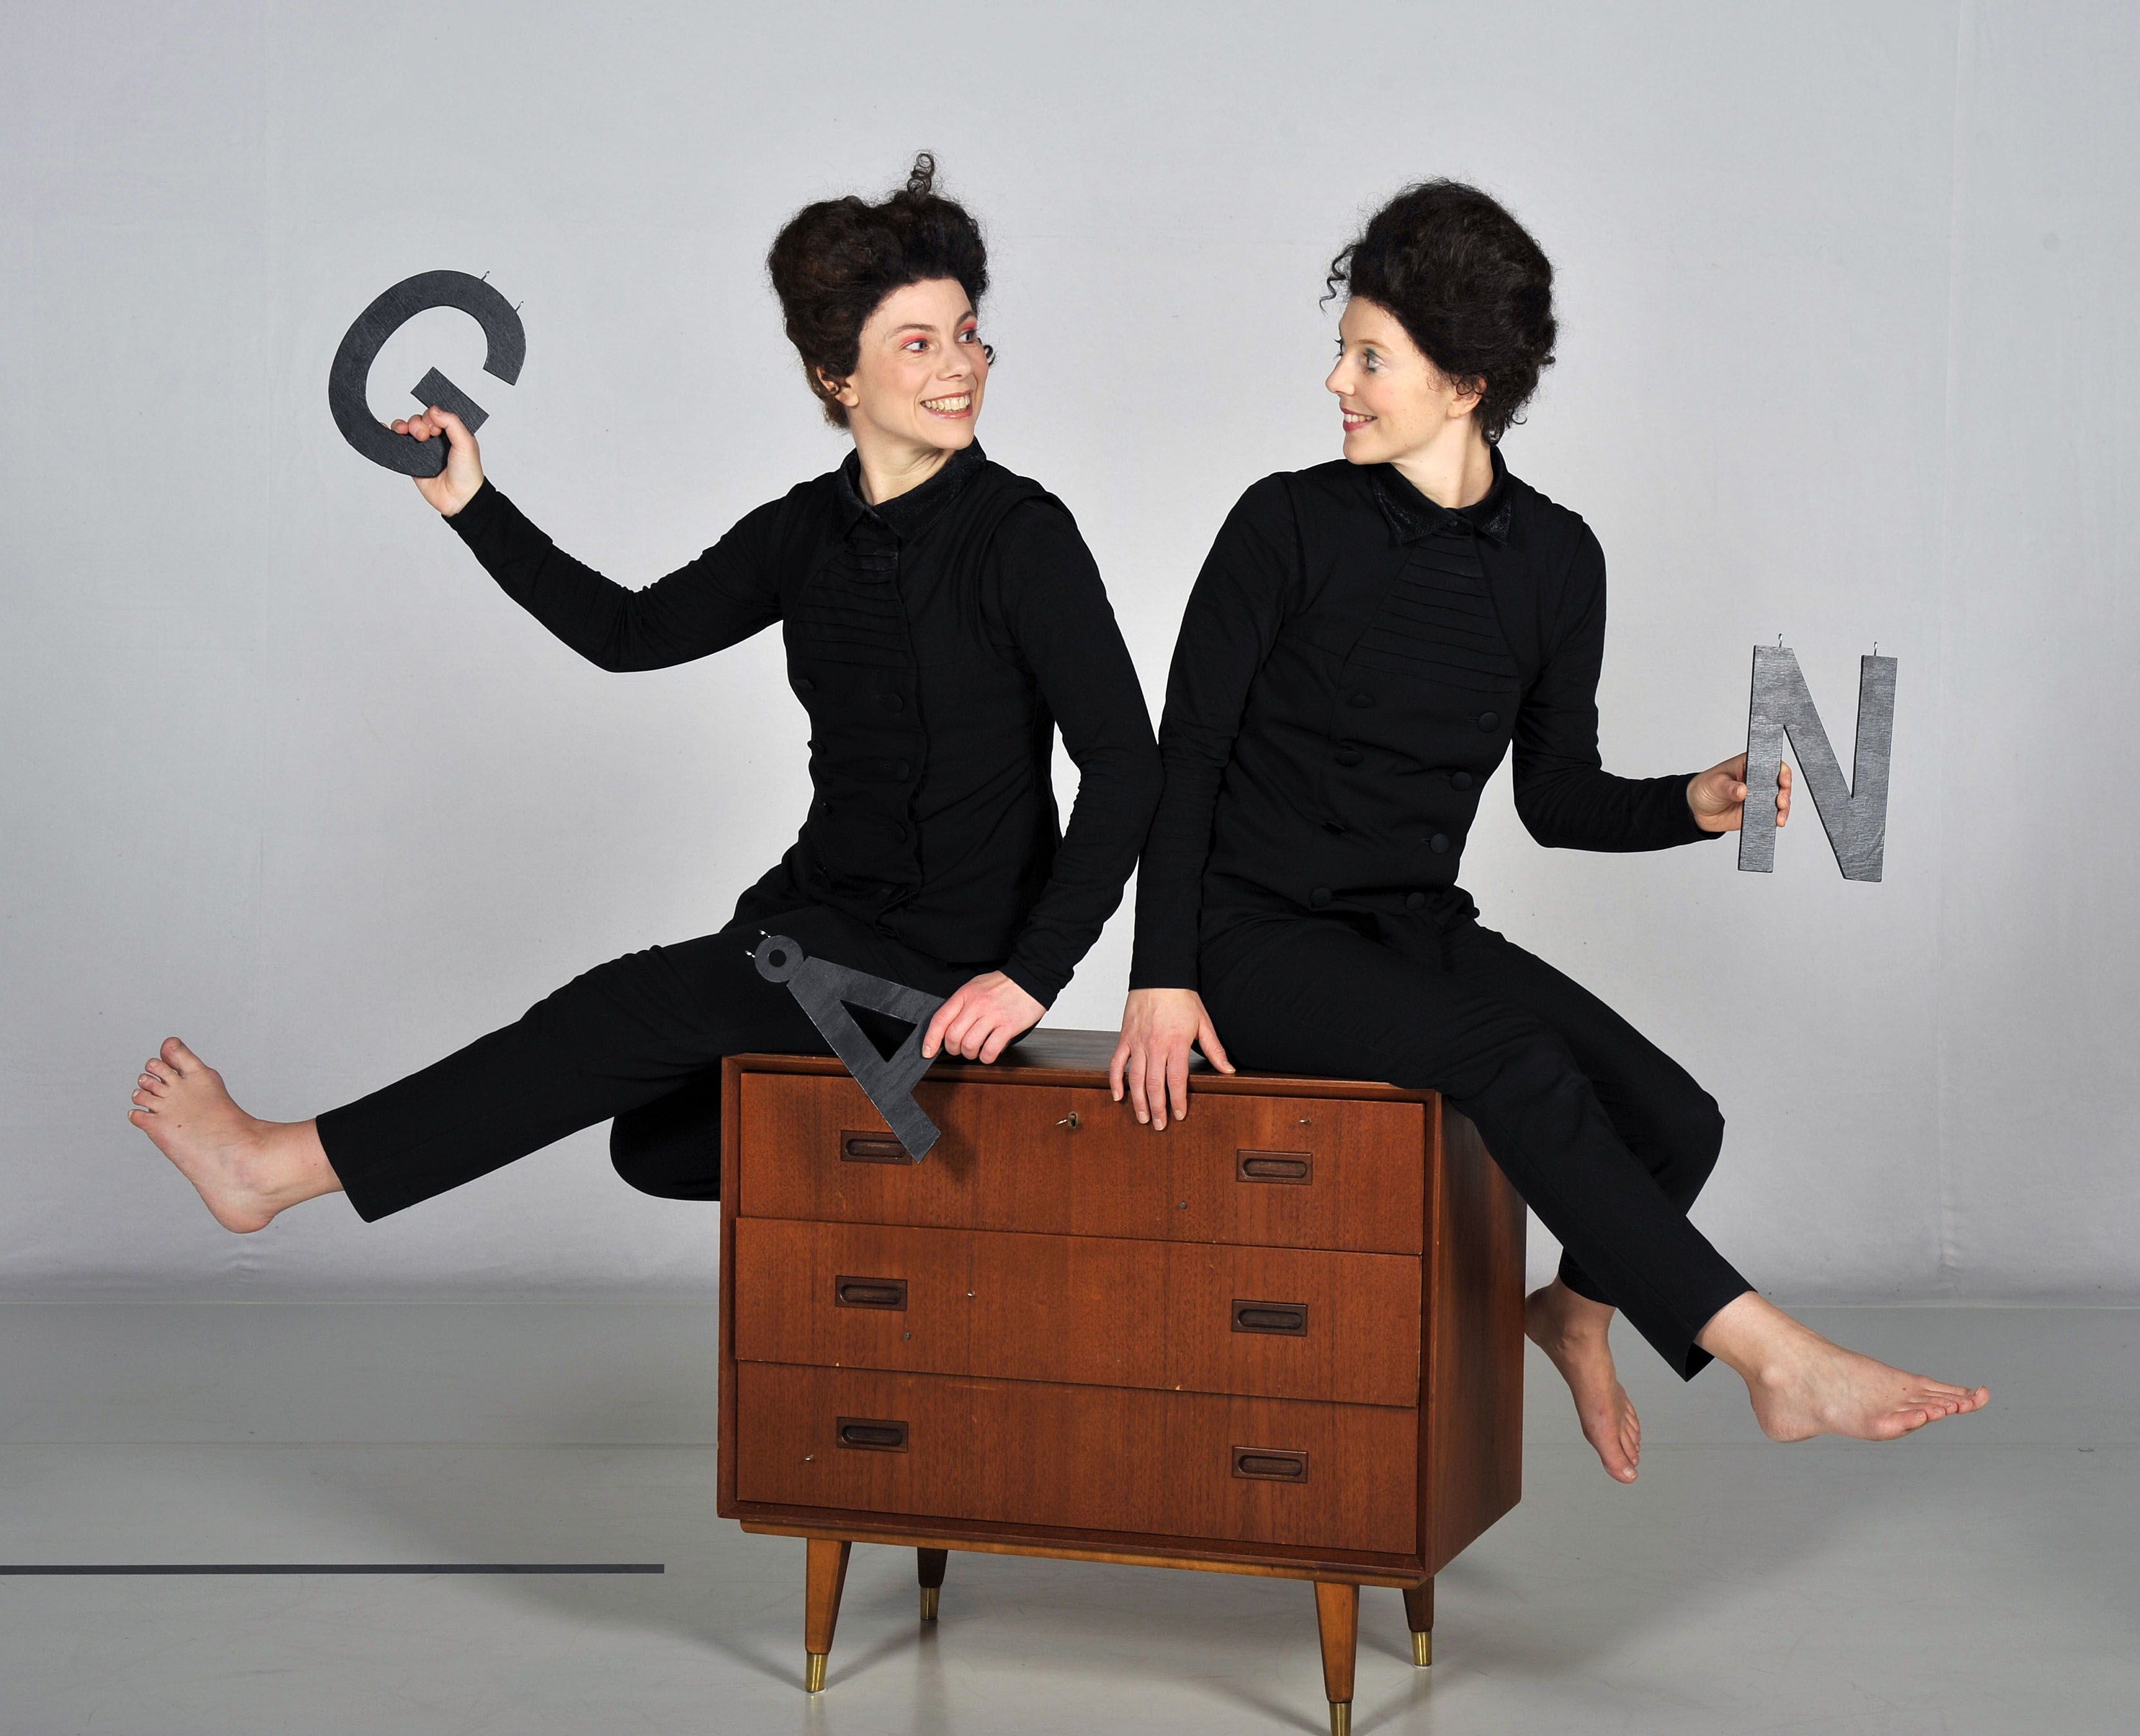 Två svarklädda dansare med bokstäver i händerna sitter på en byrålåda